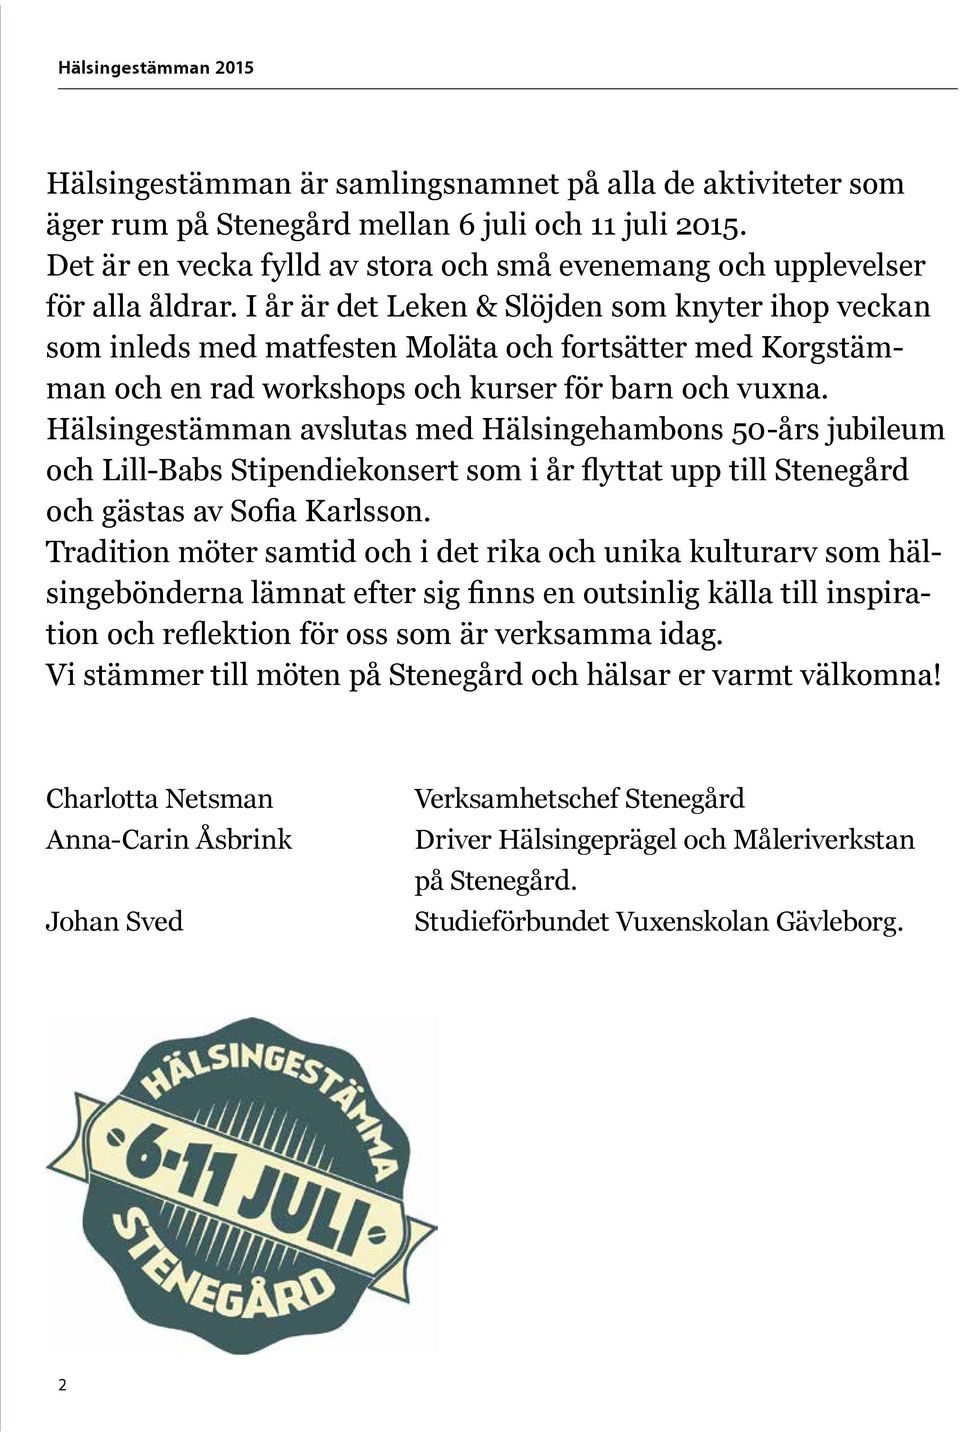 Hälsingestämman avslutas med Hälsingehambons 50-års jubileum och Lill-Babs Stipendiekonsert som i år flyttat upp till Stenegård och gästas av Sofia Karlsson.